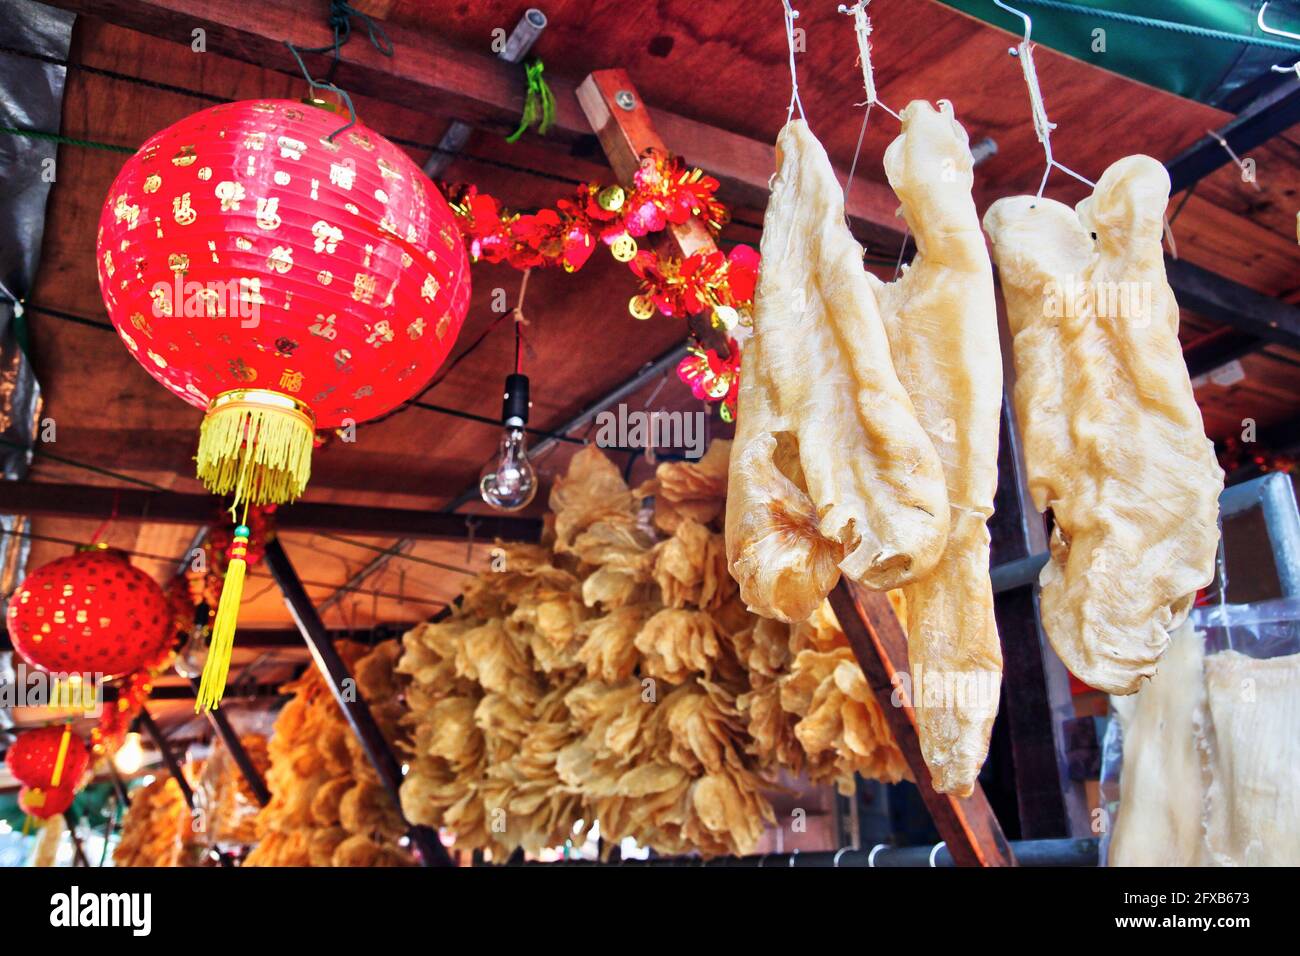 Des pailles de poisson séchées sont en vente à Tai O, sur l'île de Lantau, à Hong Kong. Il s'agit de spécialités populaires de fruits de mer à utiliser comme ingrédients dans la cuisine chinoise. Banque D'Images